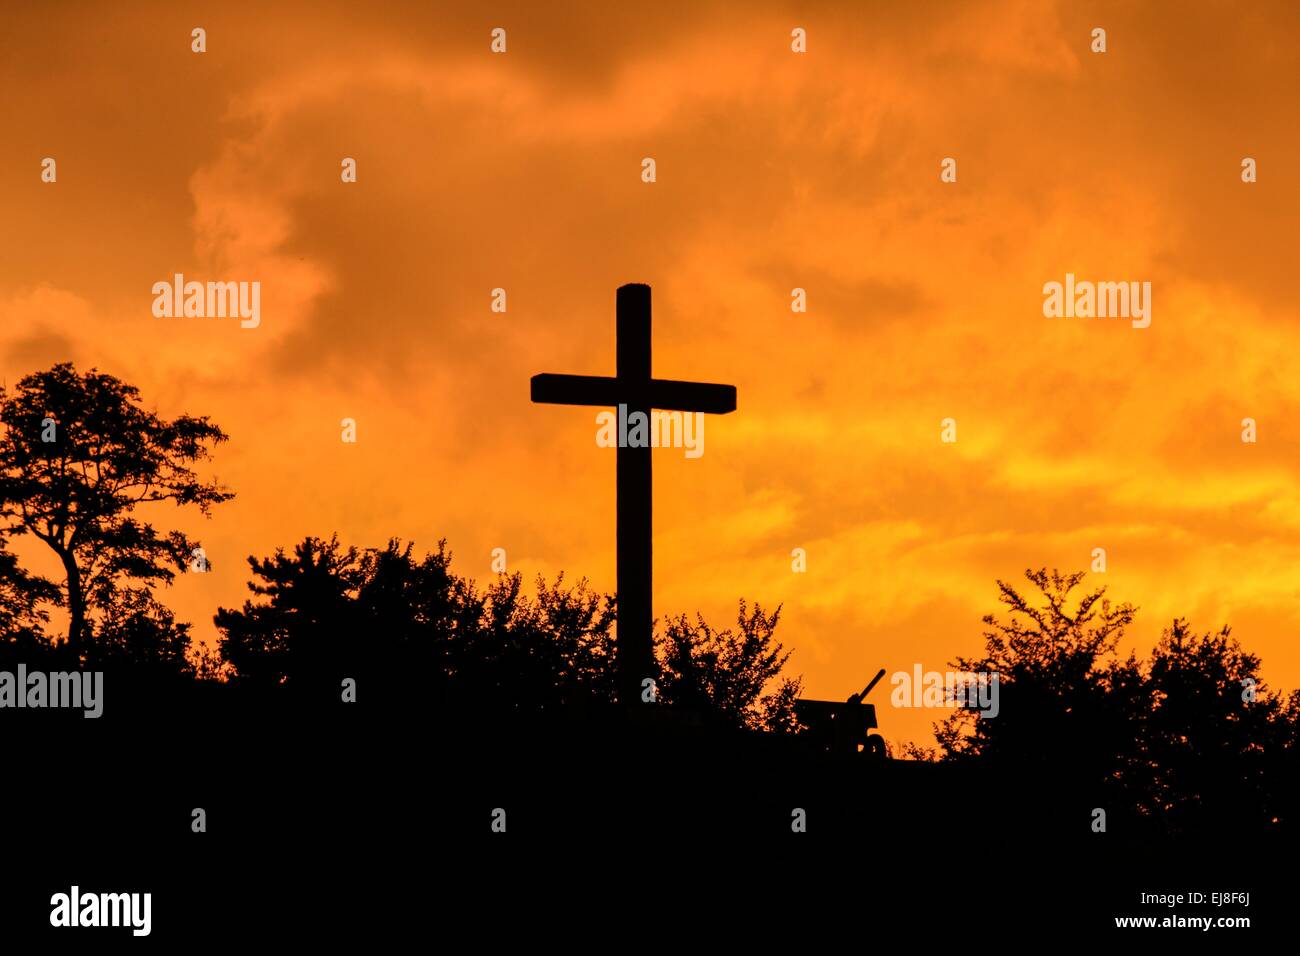 Sunrise over christian cross monument Stock Photo